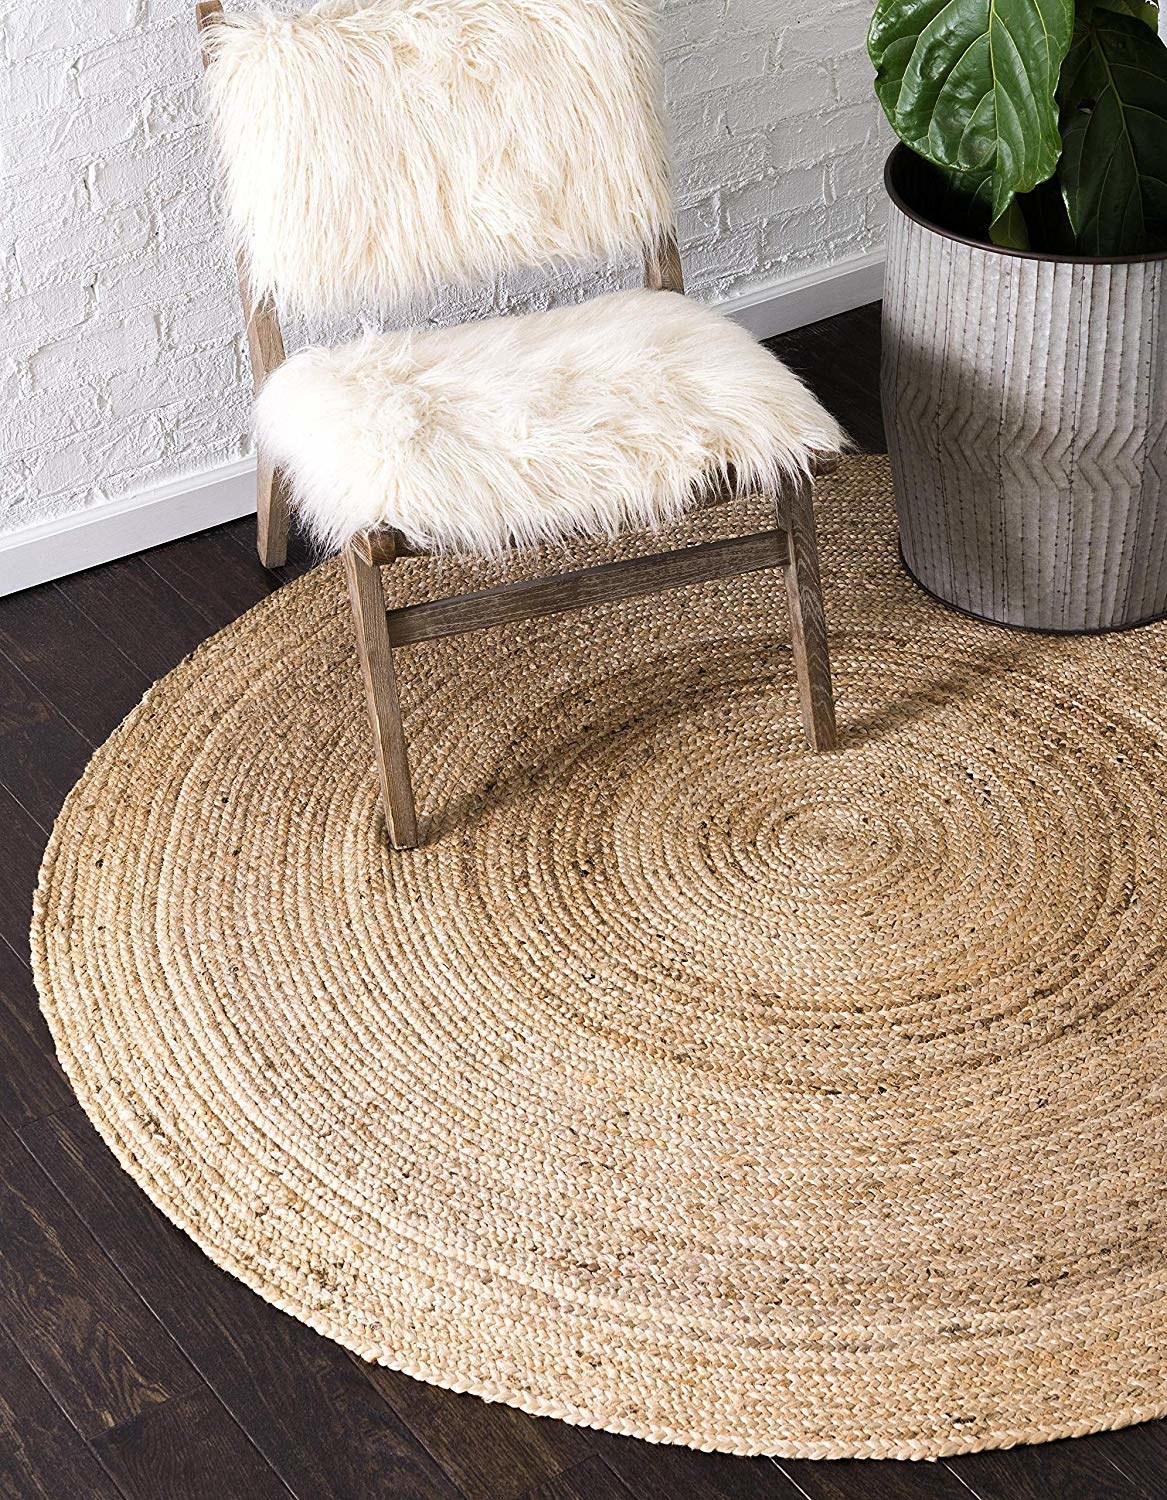 A jute rug on the floor under a chair